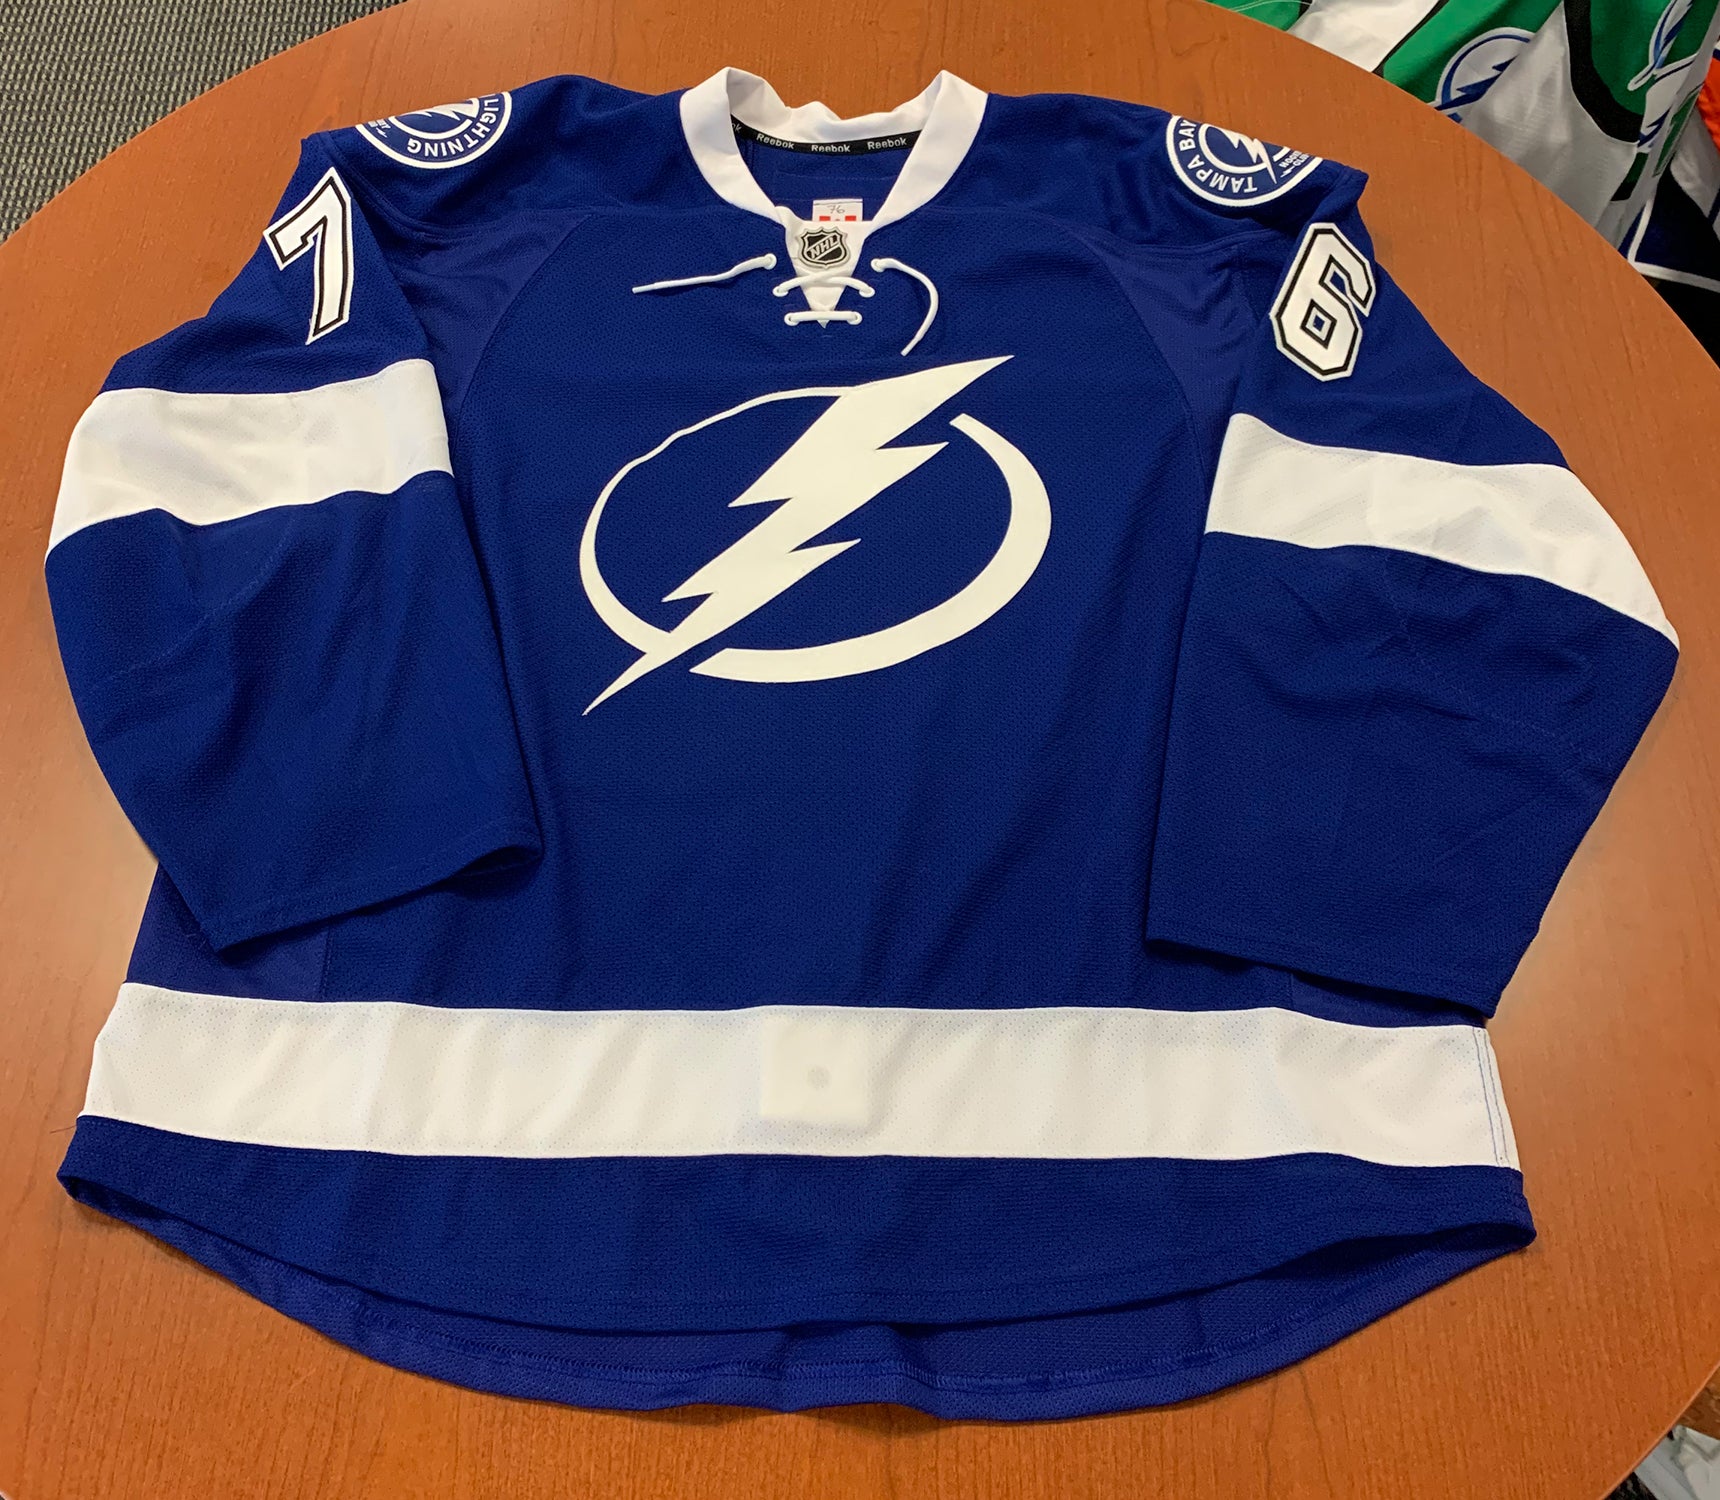 76 Ryan Martindale Tampa Bay Lightning Blue Jersey - 2015-16